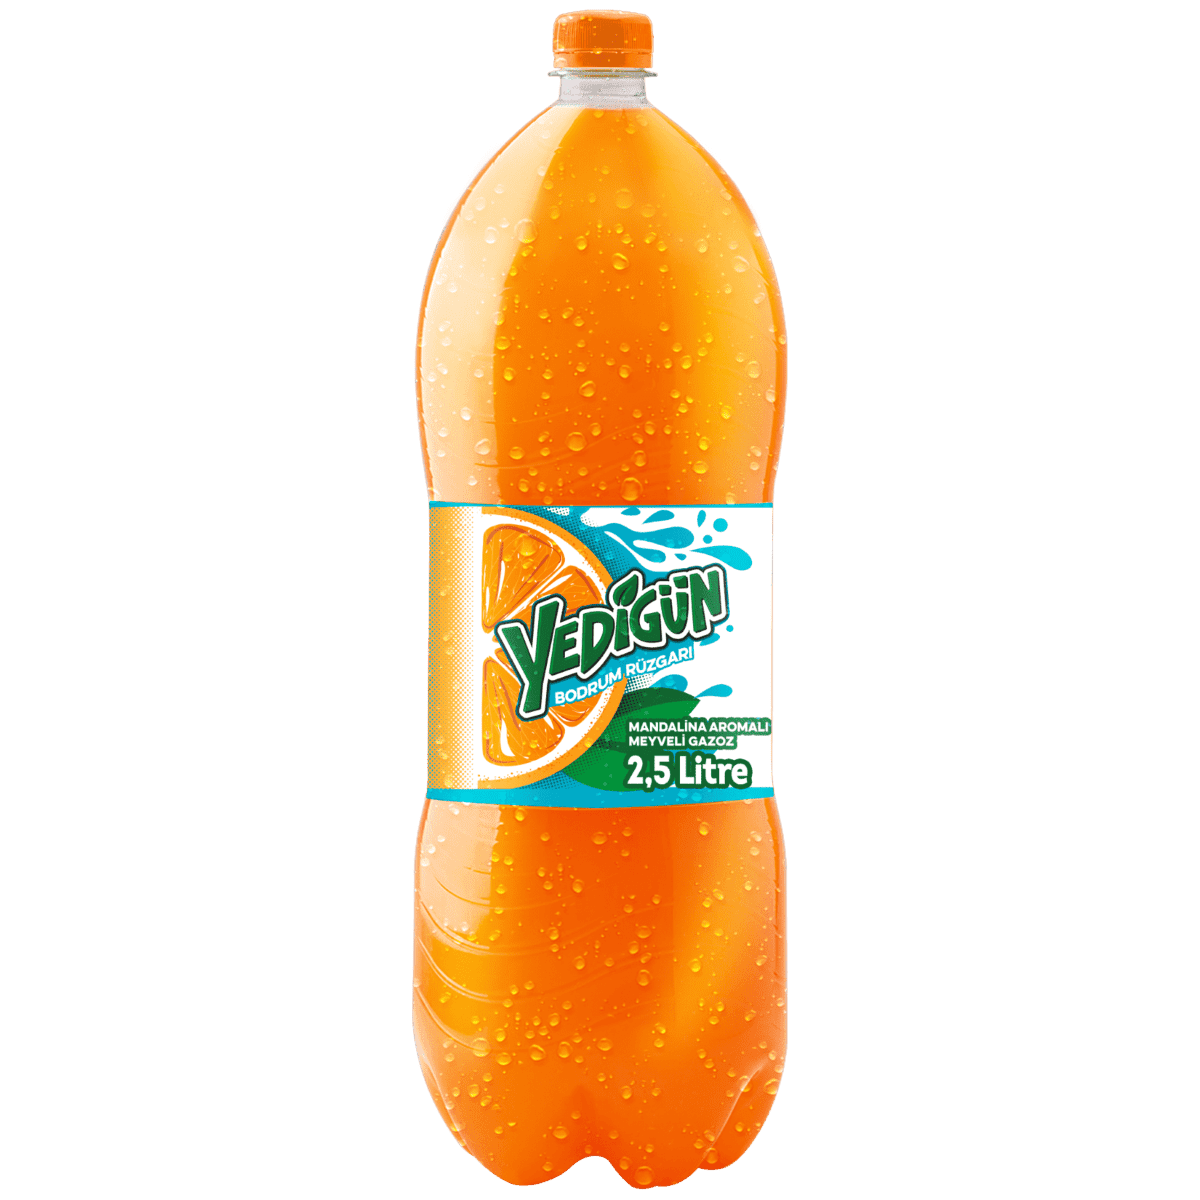 Portakallı gazoz 2.5 litre koli içi 6 adet Yedigün marka sofralarda klasik lezzet